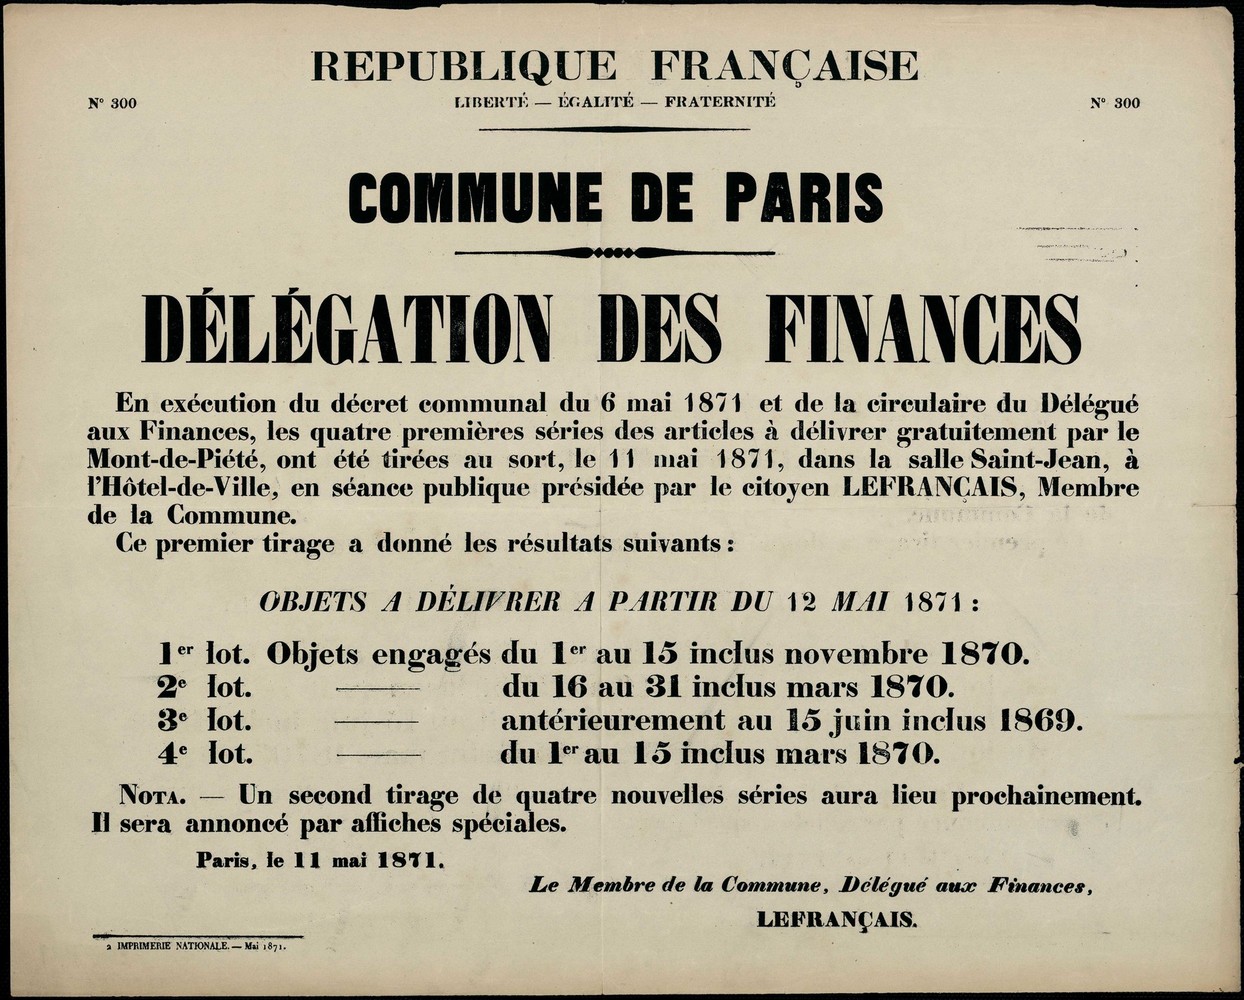 Affiche de la Commune de Paris N° 300 du 11 mai 1871 - Mont-de-Piété (Source : argonnaute.parisnanterre.fr)